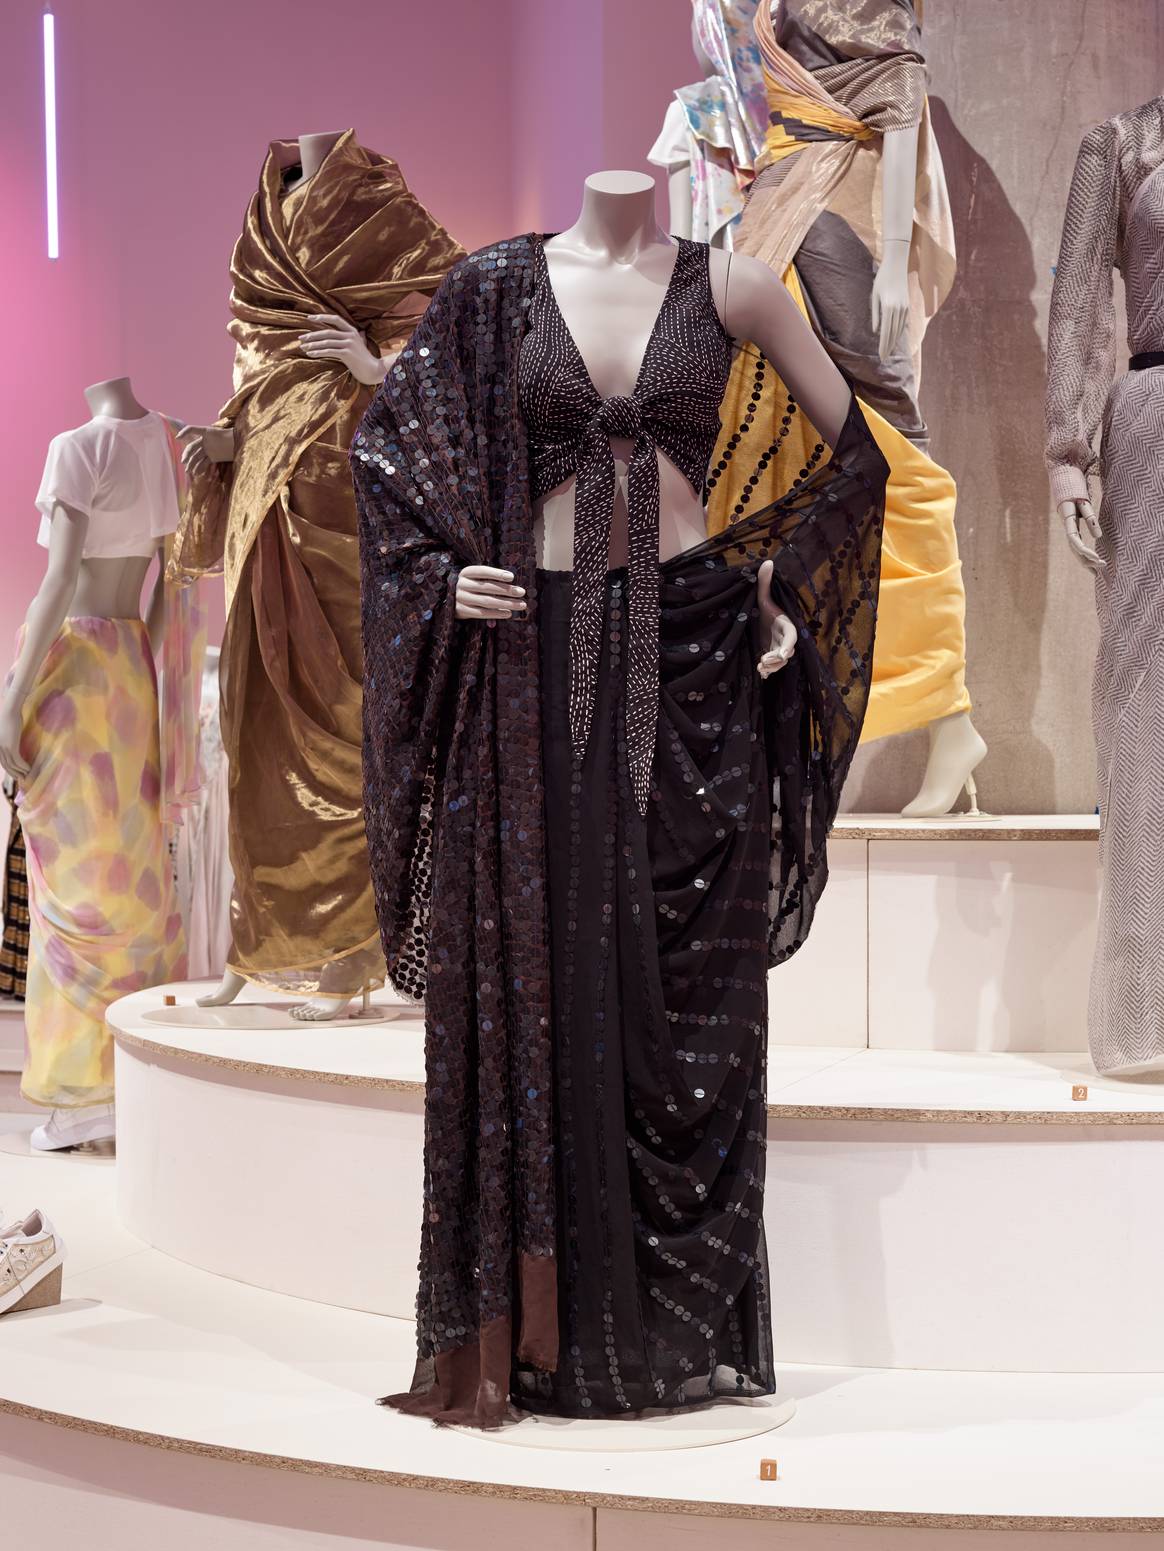 Schwarzer Sari mit geknoteter Bluse im Vordergrund; kombiniert mit weißem Crop-Top und Turnschuhen (links). Bild: Andy Stagg / Design Museum